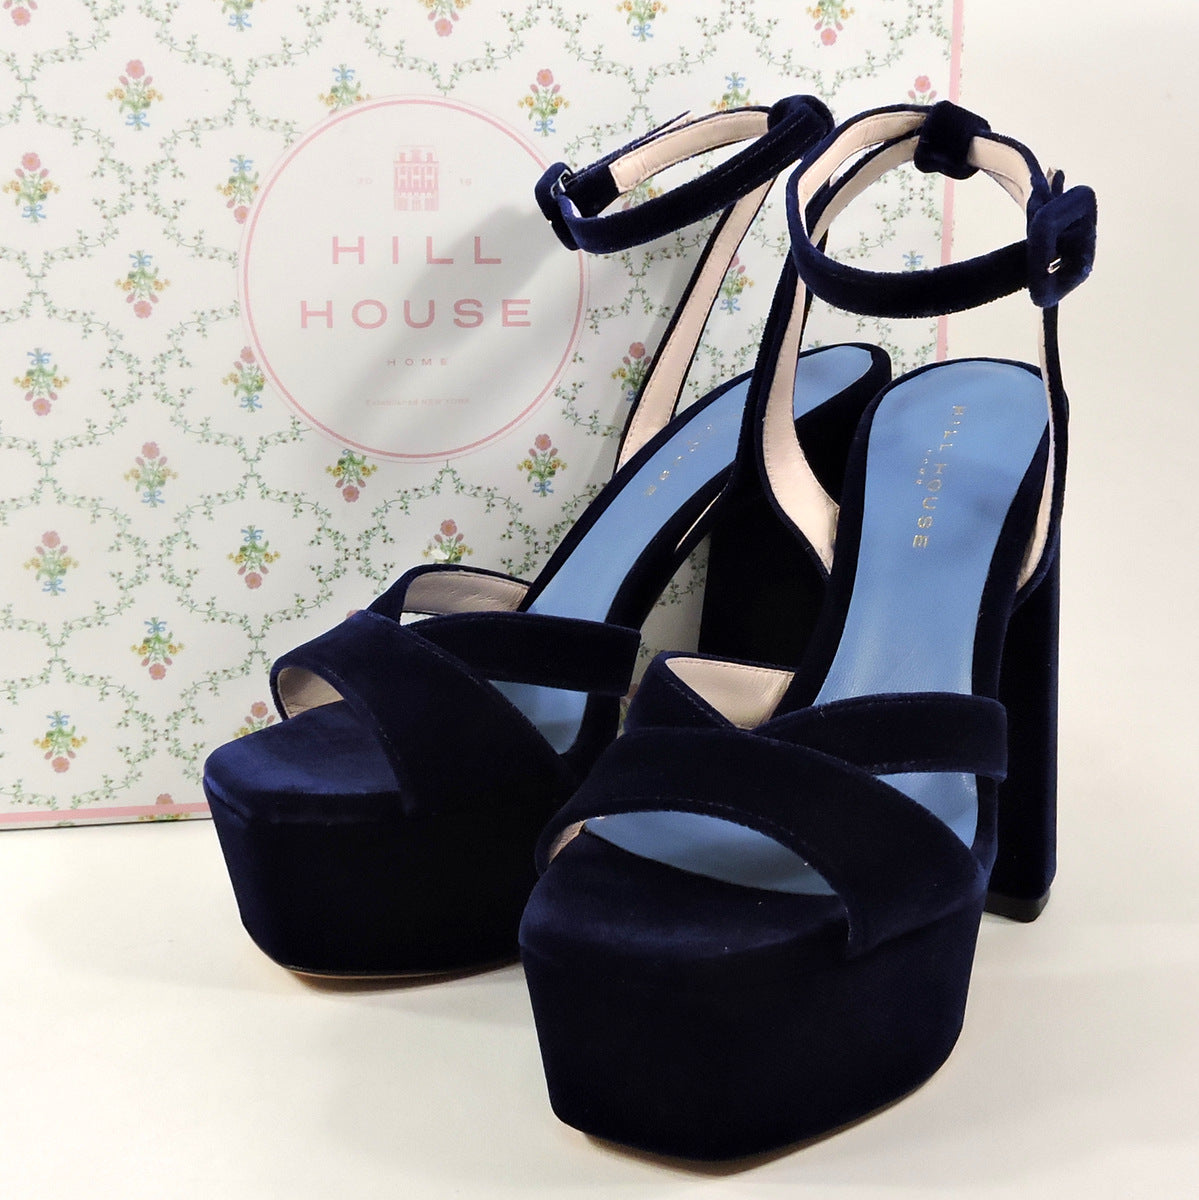 Navy Satin Block Heel Sandal with Wrapped Satin Tie | Sandals heels, Blue  wedding shoes low heel, Wedding shoes low heel